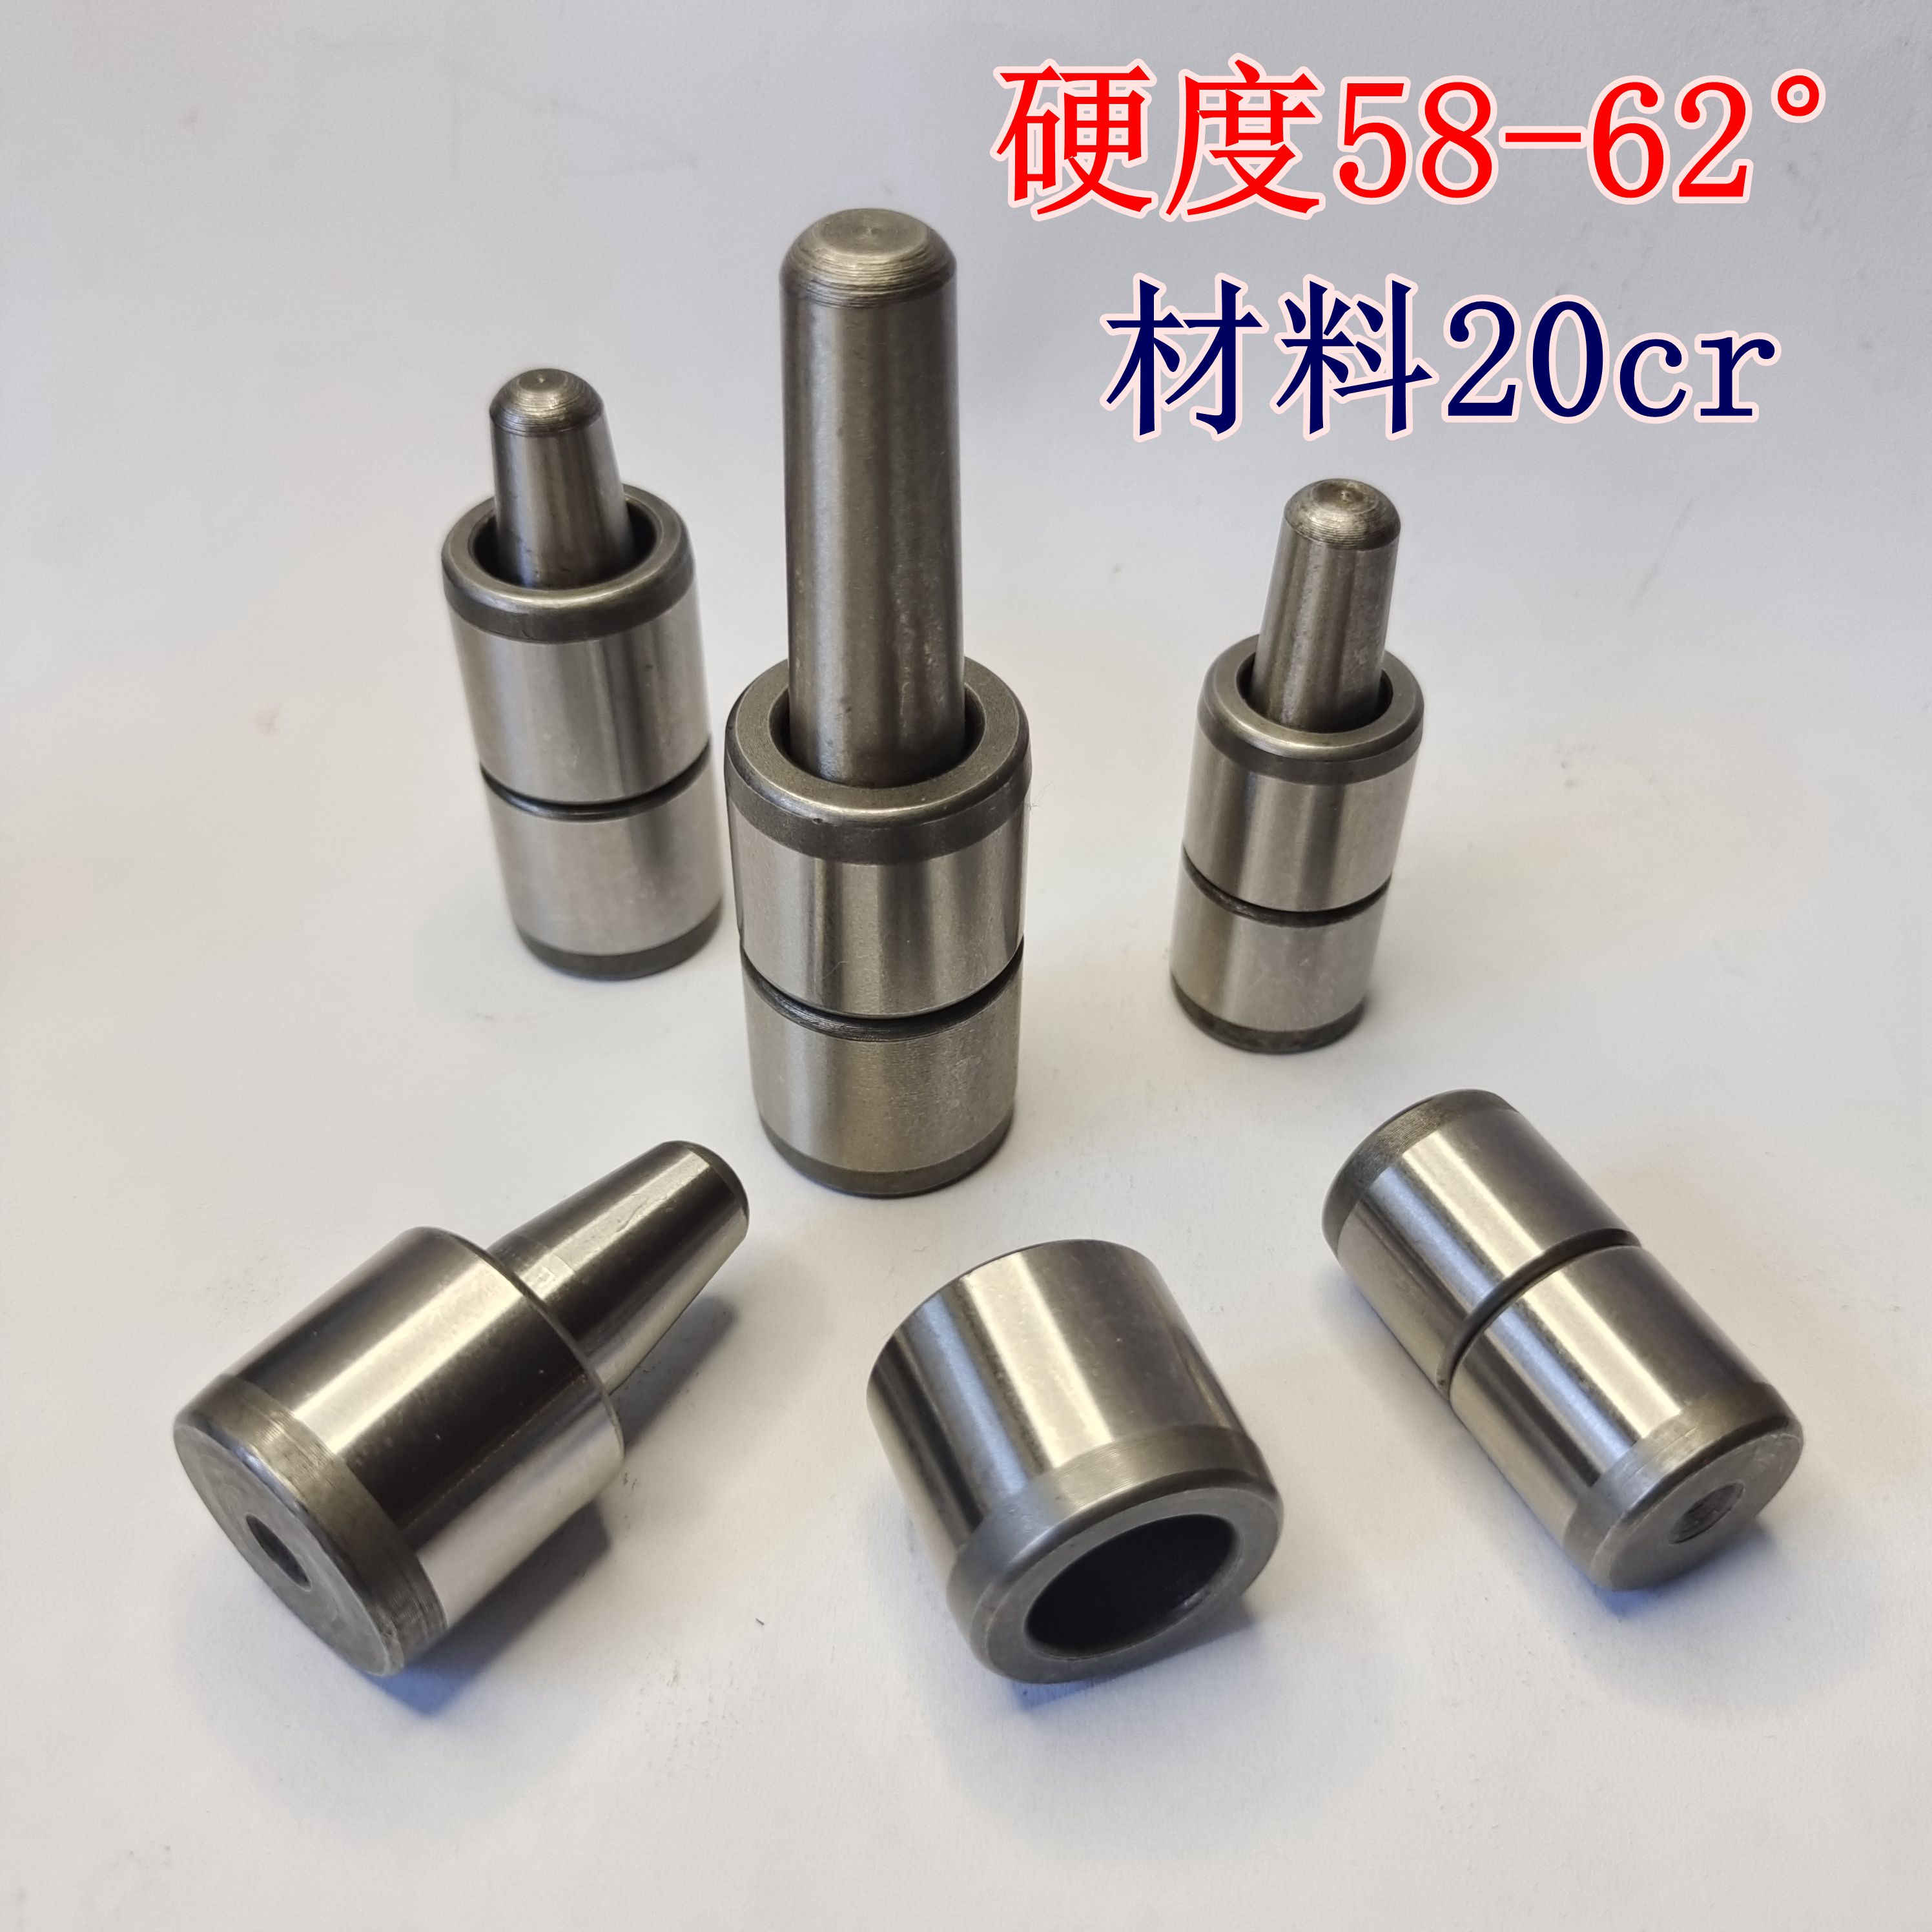 16-20橡胶硅胶模具导柱导套精准定位销比例导柱材质20cr硬度62±